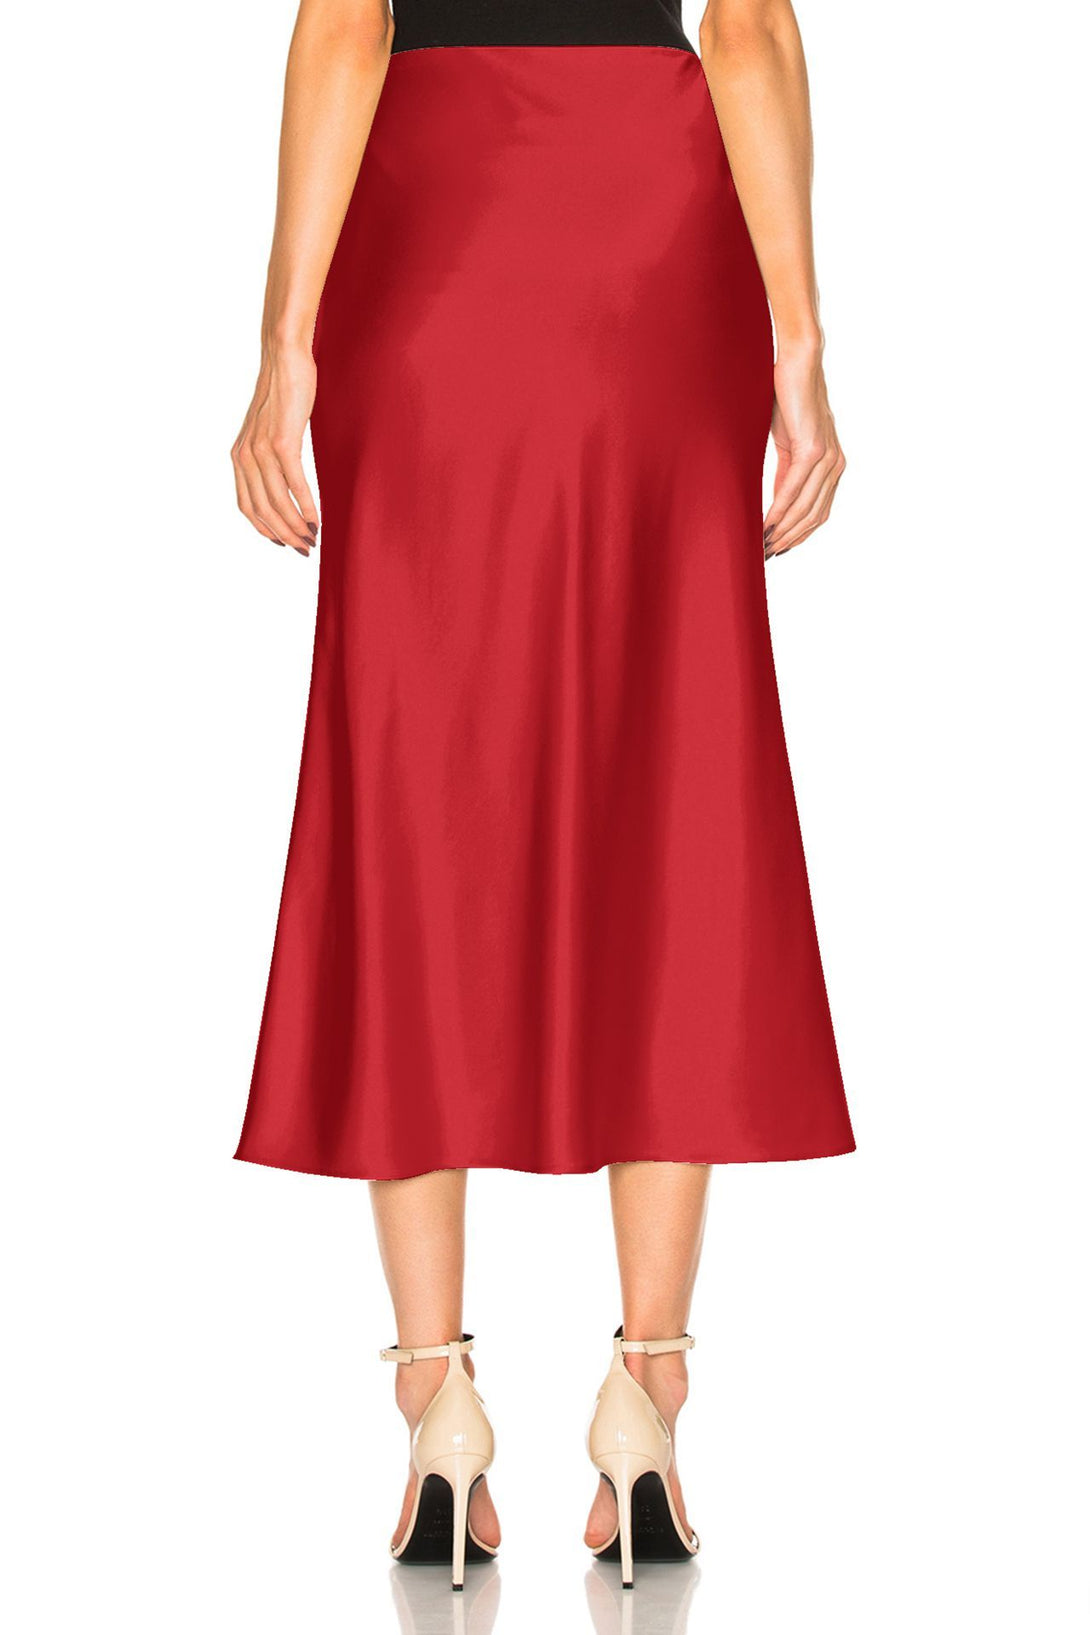 Women-Designer-Red-Skirt-By-Kyle-Richards